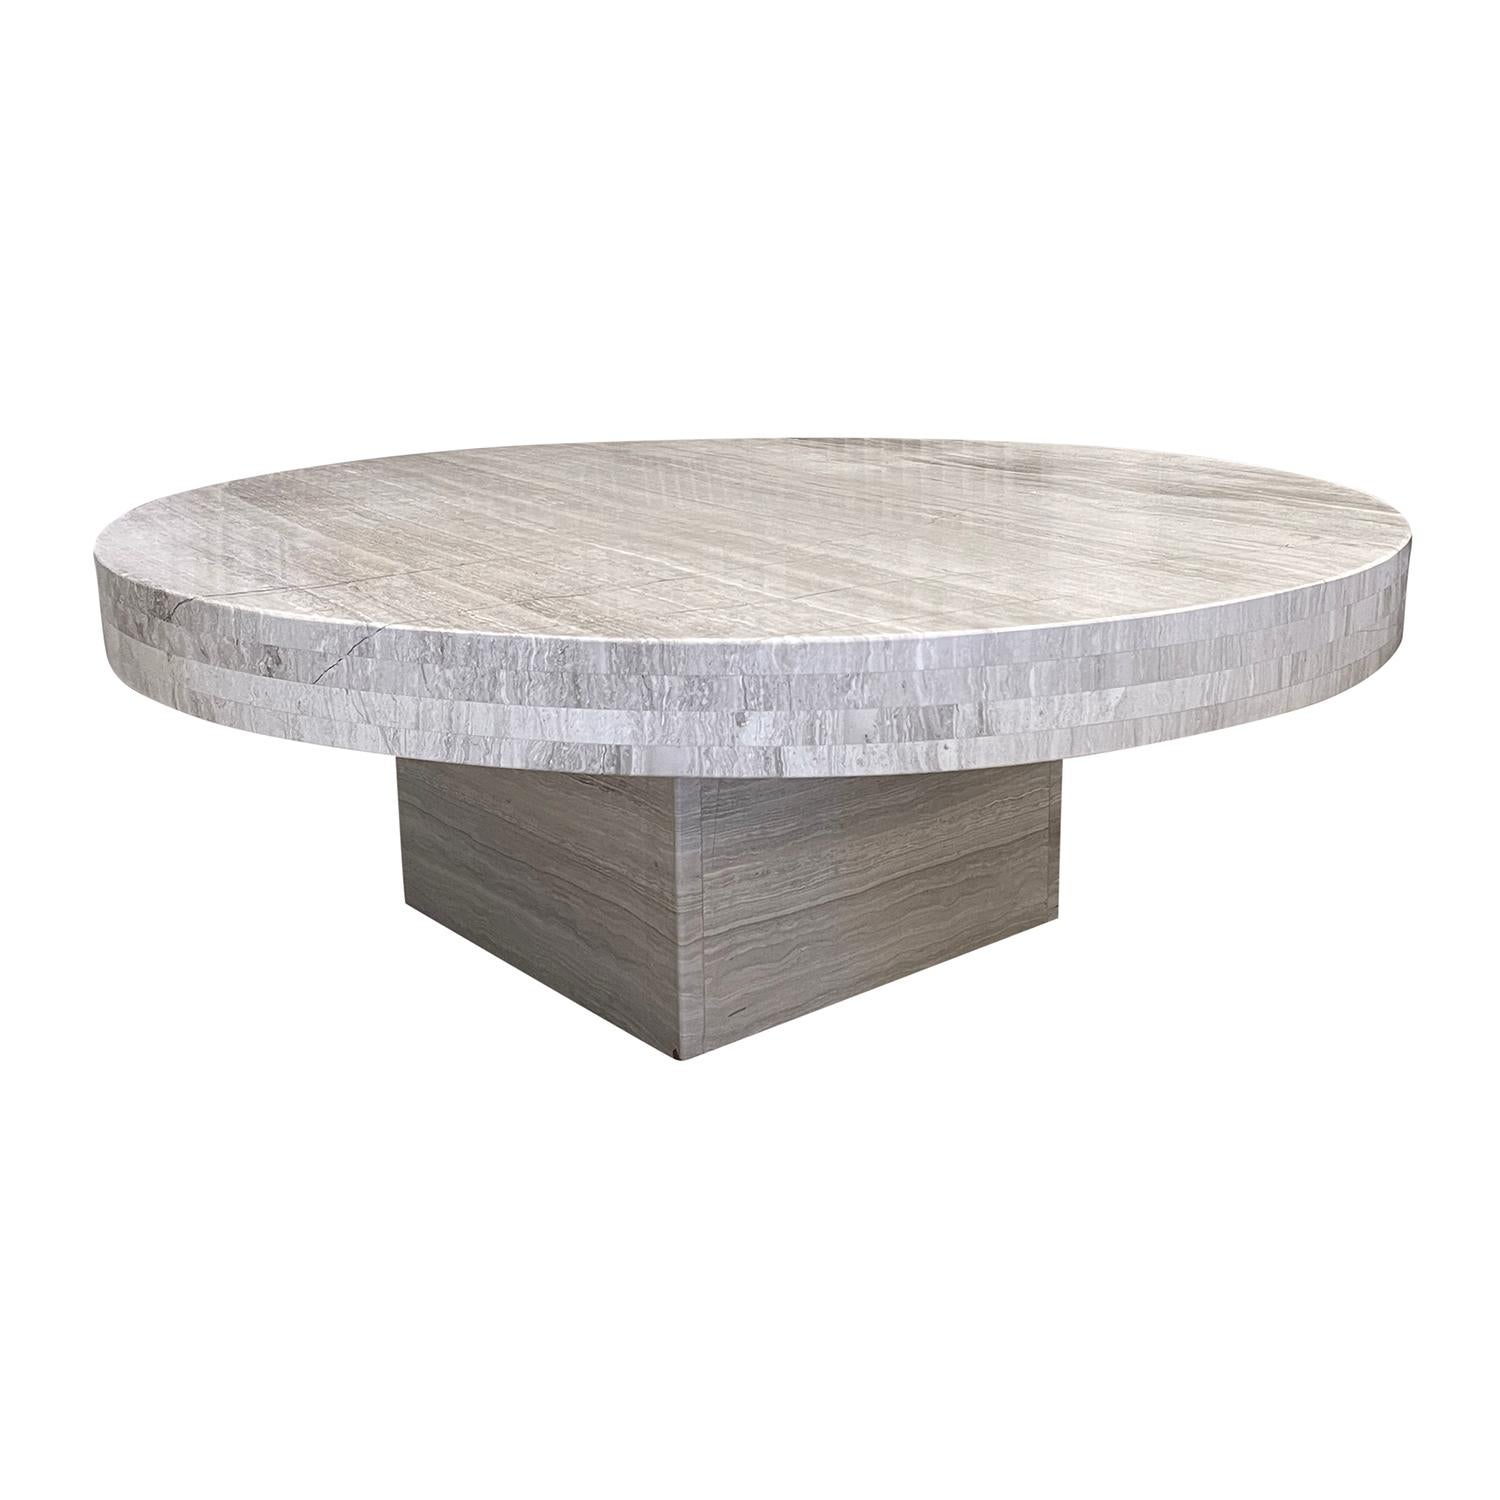 Table basse italienne minimaliste du 21e siècle en travertin - Table de canapé ronde